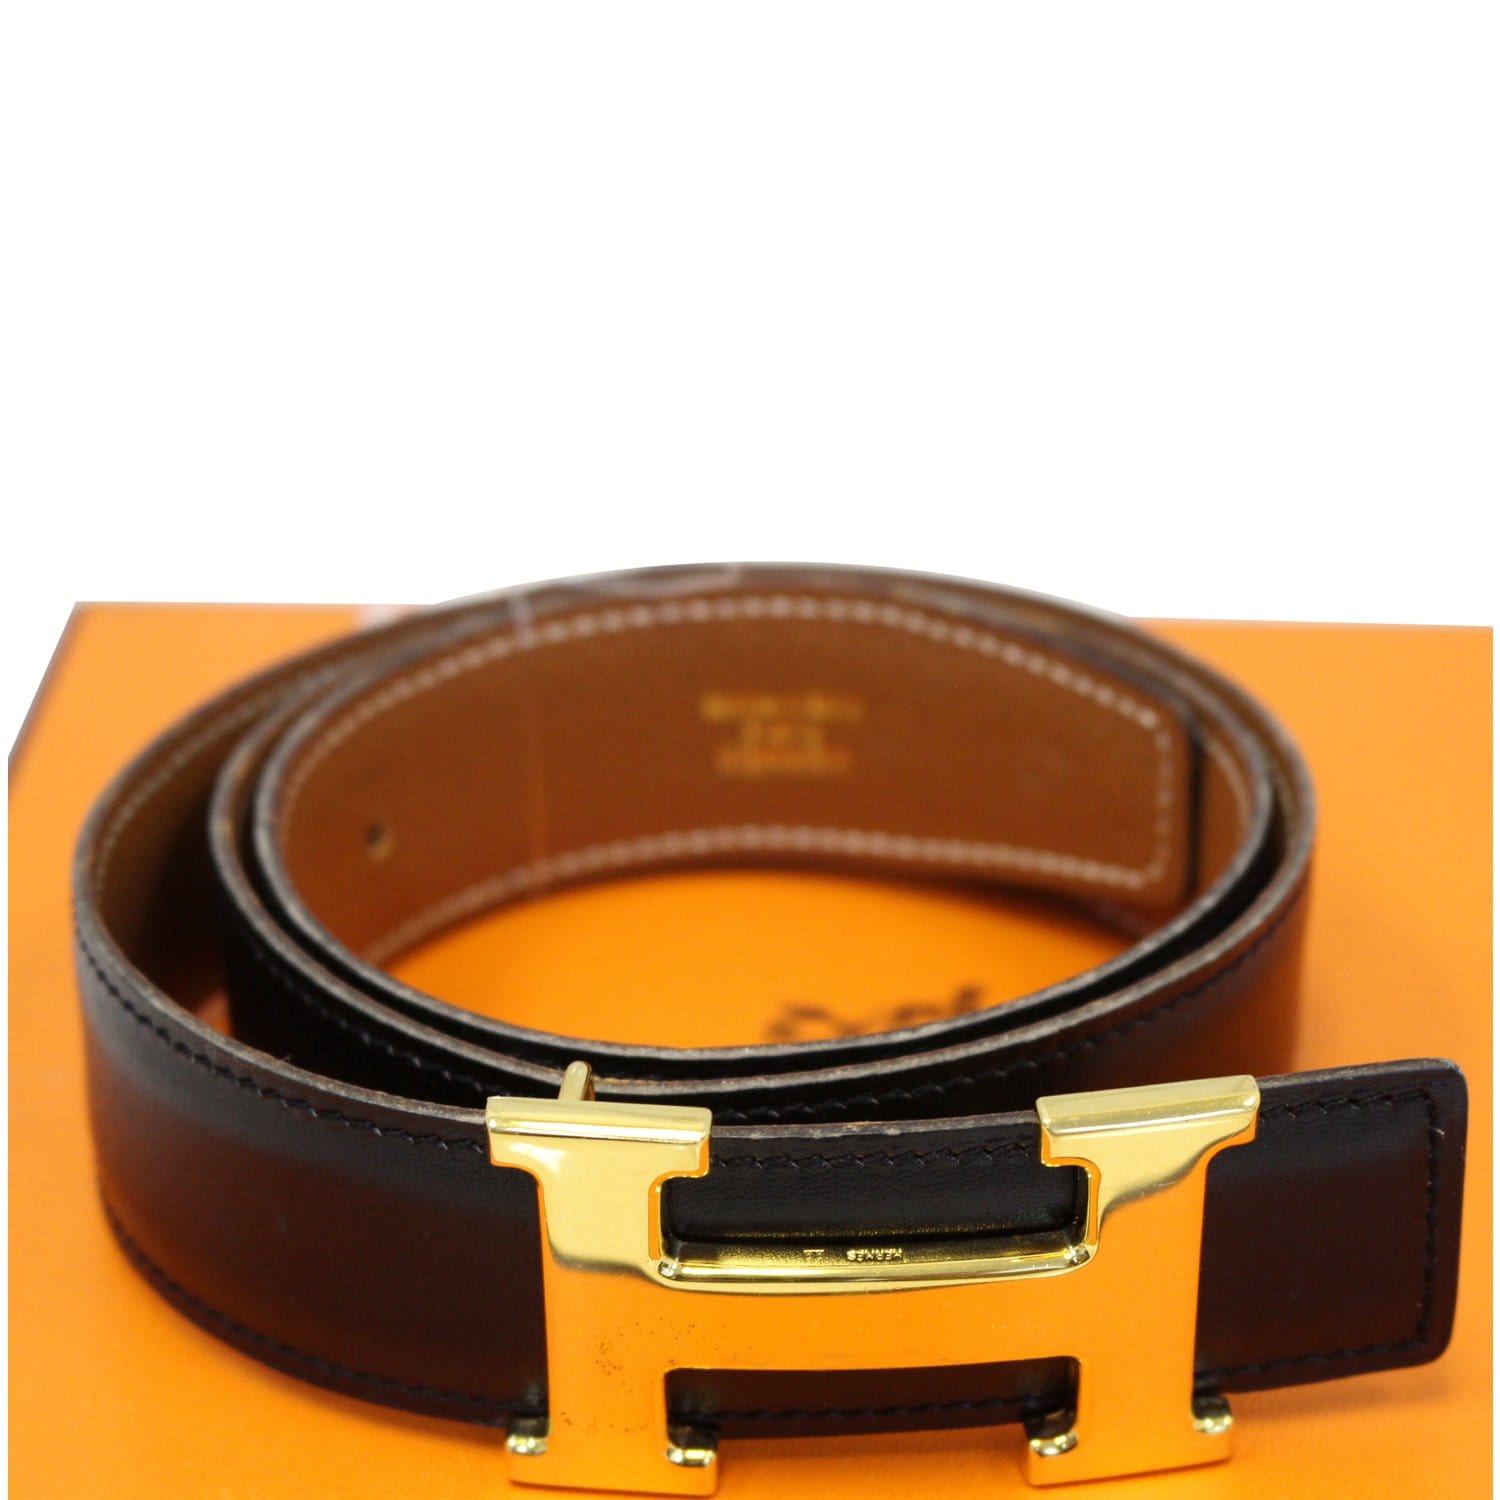 Hermes Belt Belt Size Conversion Chart : Belt size guide | Elliot ...